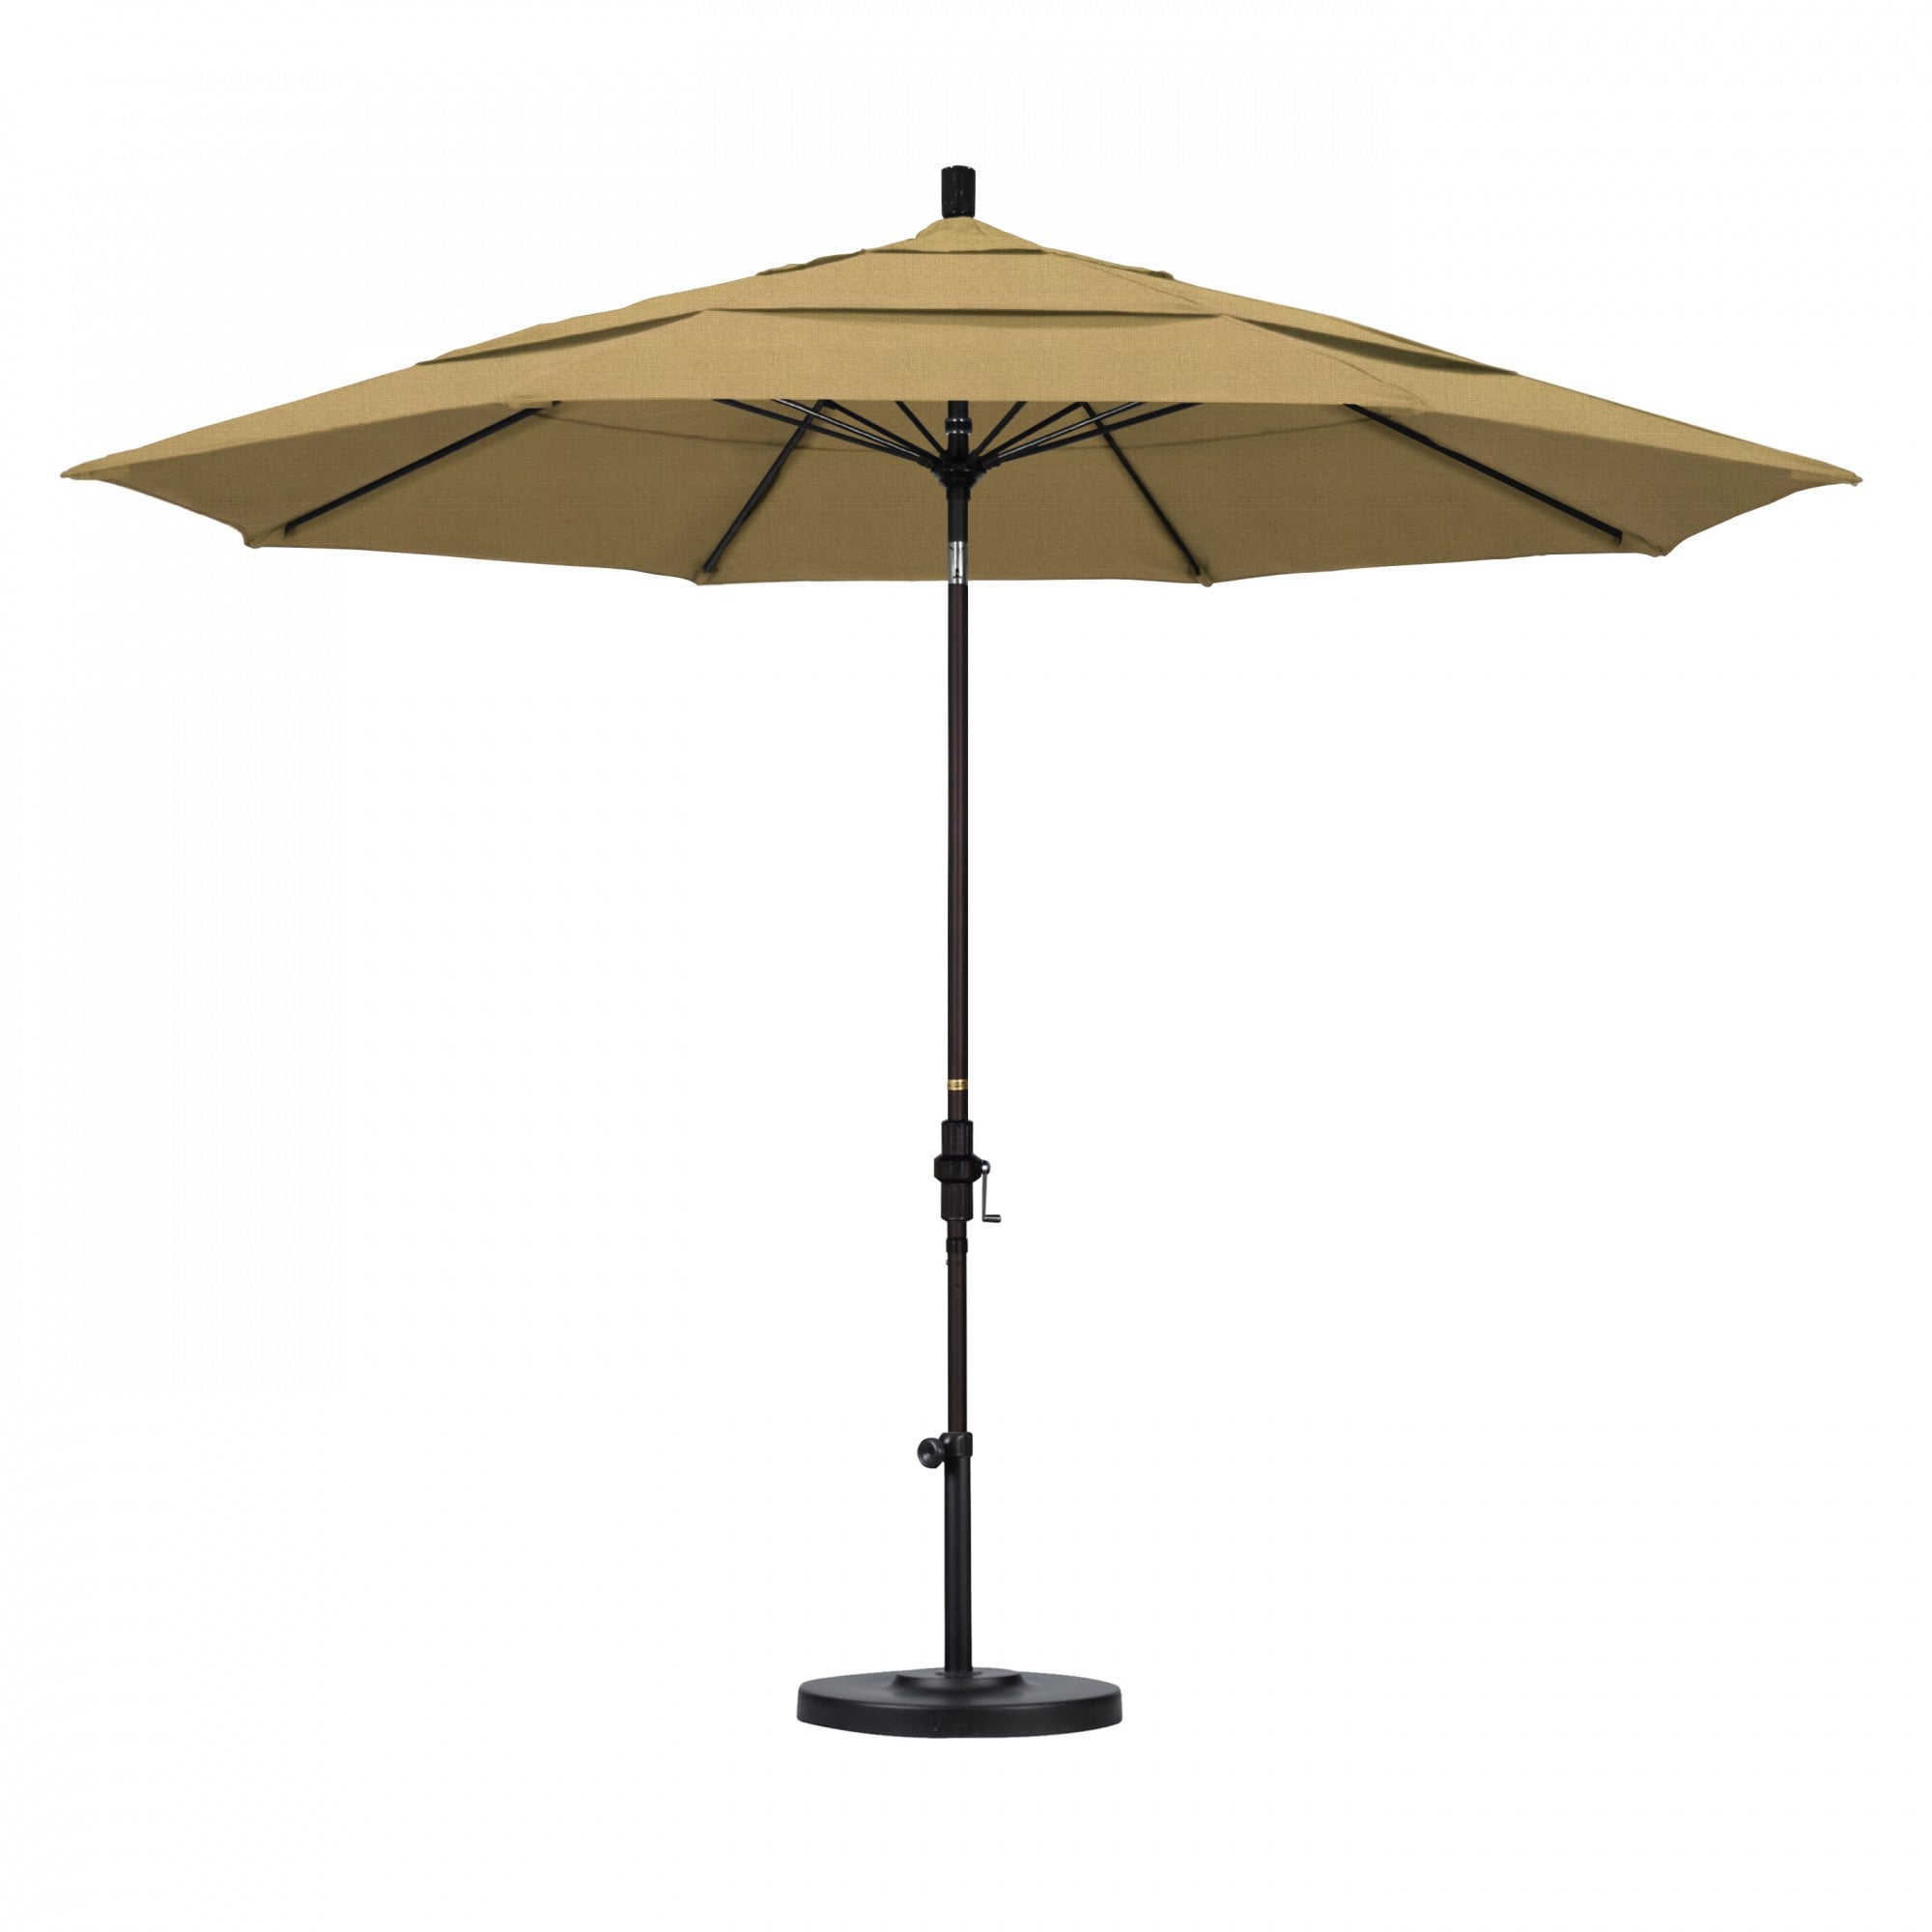 California Umbrella - 11' - Patio Umbrella Umbrella - Aluminum Pole - Champagne - Olefin - GSCUF118117-F67-DWV